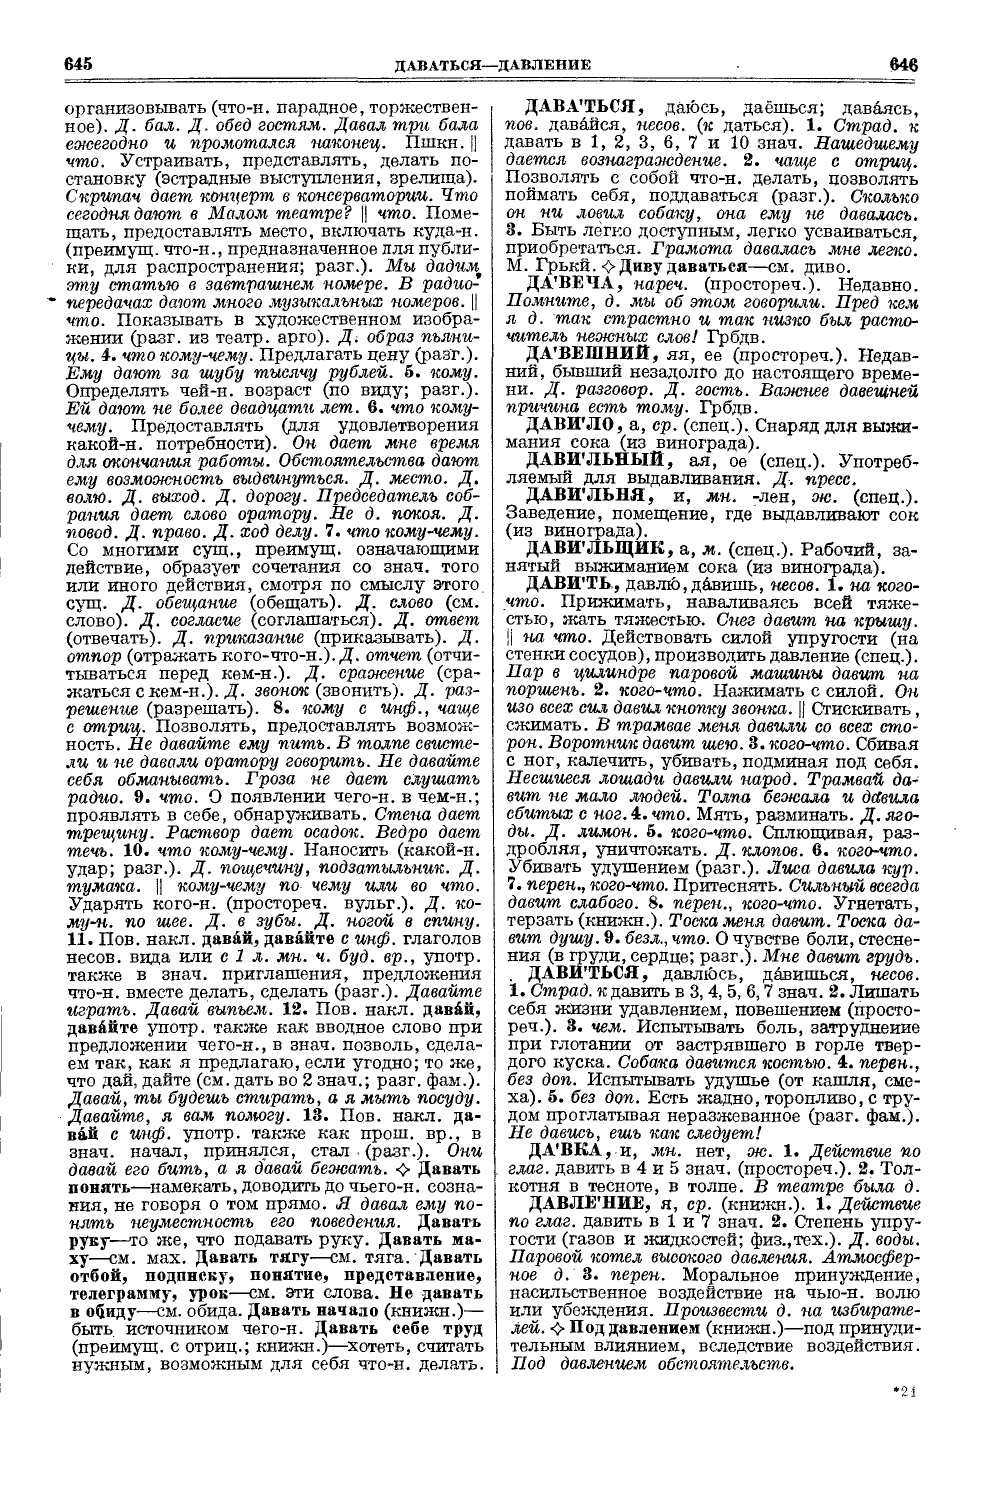 Фотокопия pdf / скан страницы 361 толкового словаря Ушакова (том 1)